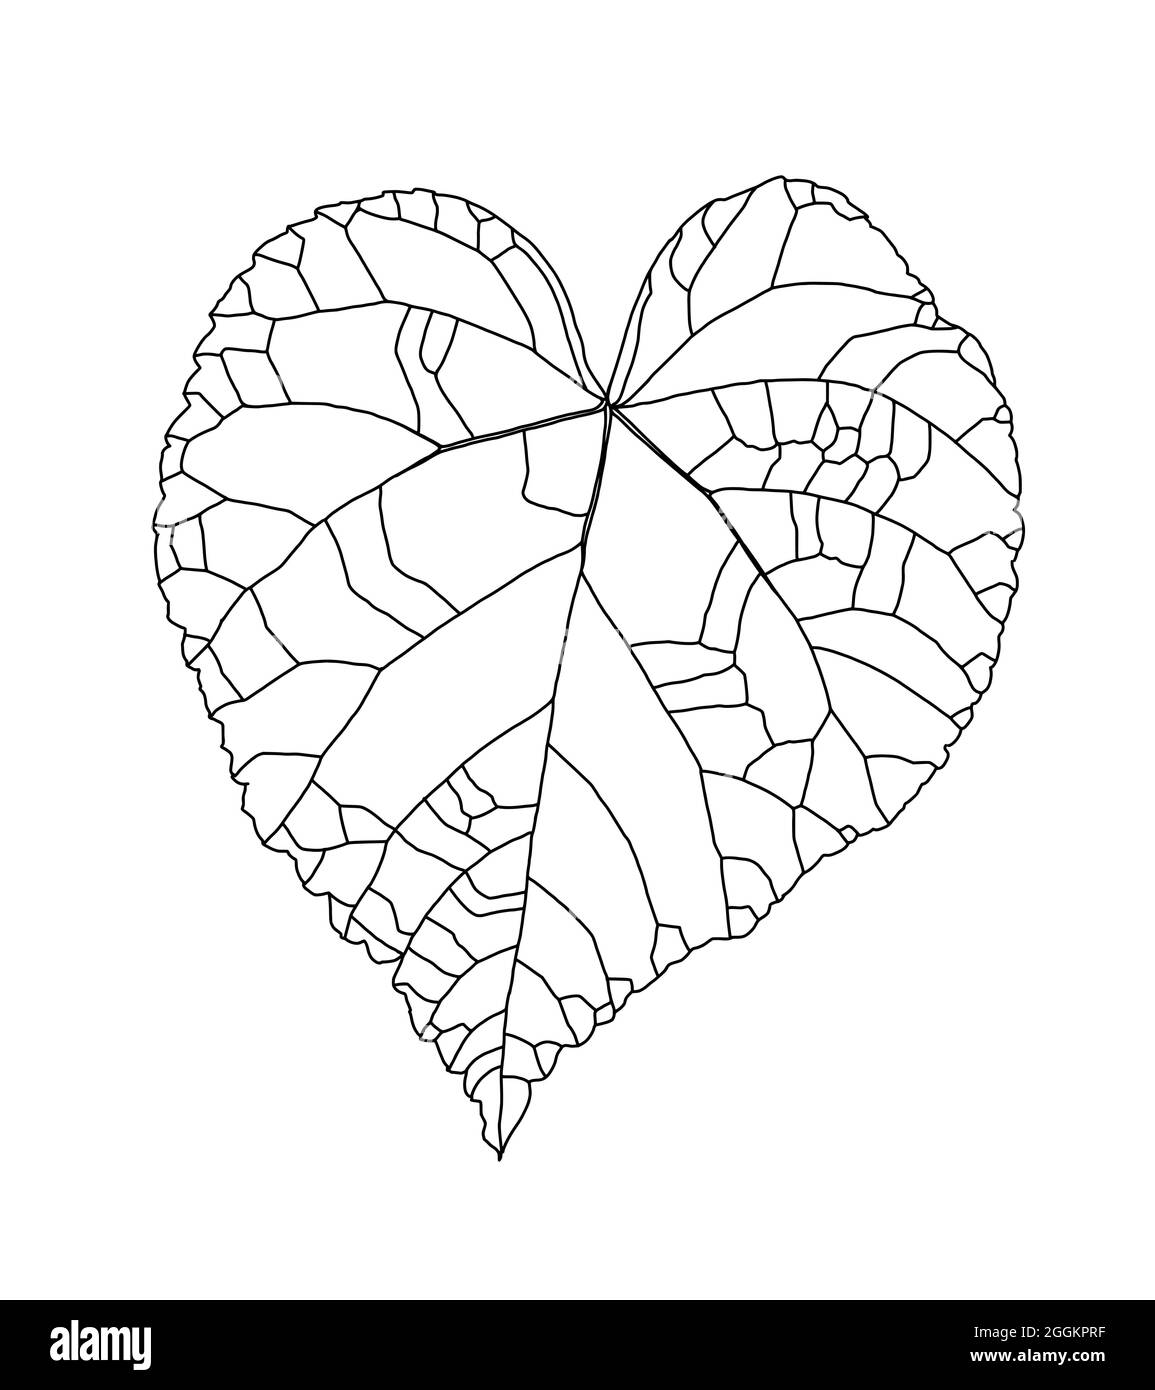 Motif graphique linéaire d'une feuille de tilleul en forme de cœur isolée sur un fond blanc. Illustration vectorielle. Élément pour le design dans le style des dessins au trait. Illustration de Vecteur